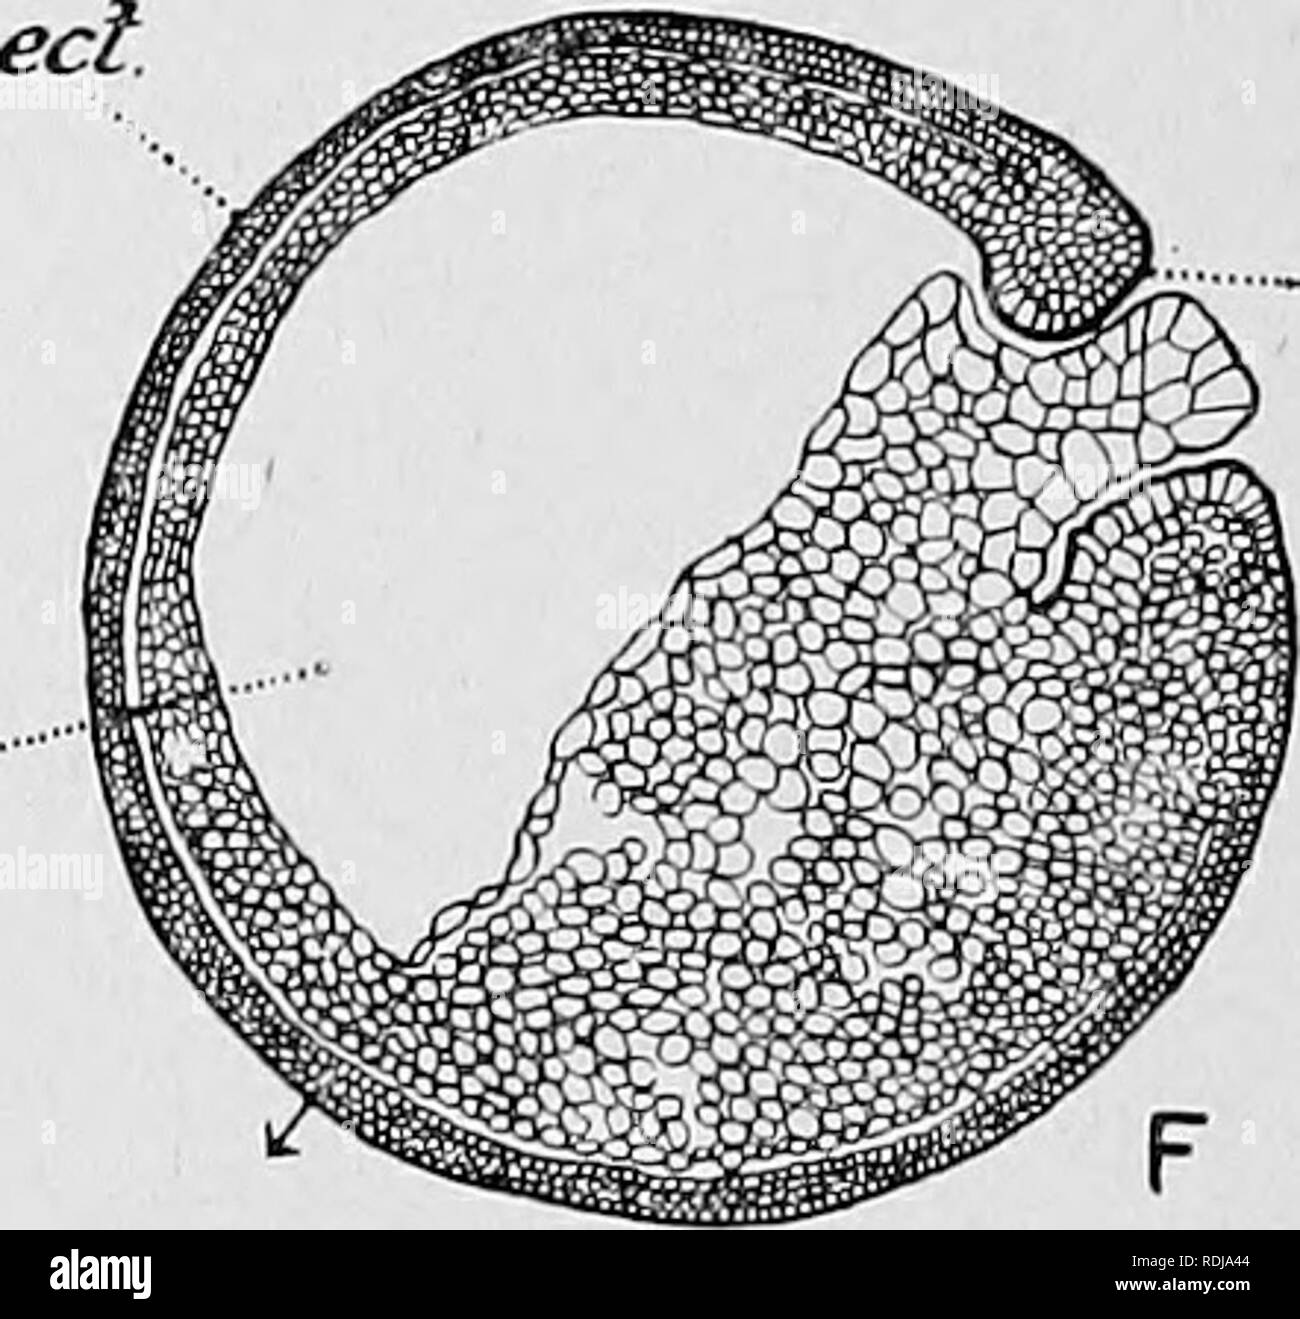 . Libro di testo di embriologia. Embriologia. yp ent. -9-i in Fig. 25.-sagittale, sezioni attraverso l'uovo di liana lemporaria che illustra il processo di gastrulation. (Dopo Jenkinson, 1913.), ect ectoderm; ent, cavità archeuteric ; g.l, gastrular labbro; s.c', la segmentazione cavità; y.'p, tuorlo-plug. La freccia indica l'originale polo apicale. ulteriormente in modo tale che il archenteron è molto più profondo. La diffusione del tuorlo-celle lungo il tetto della cavità di segmentazione, già. Si prega di notare che queste immagini vengono estratte dalla pagina sottoposta a scansione di immagini che possono essere state migliorate digitalmente per la leggibilità - coloratio Foto Stock